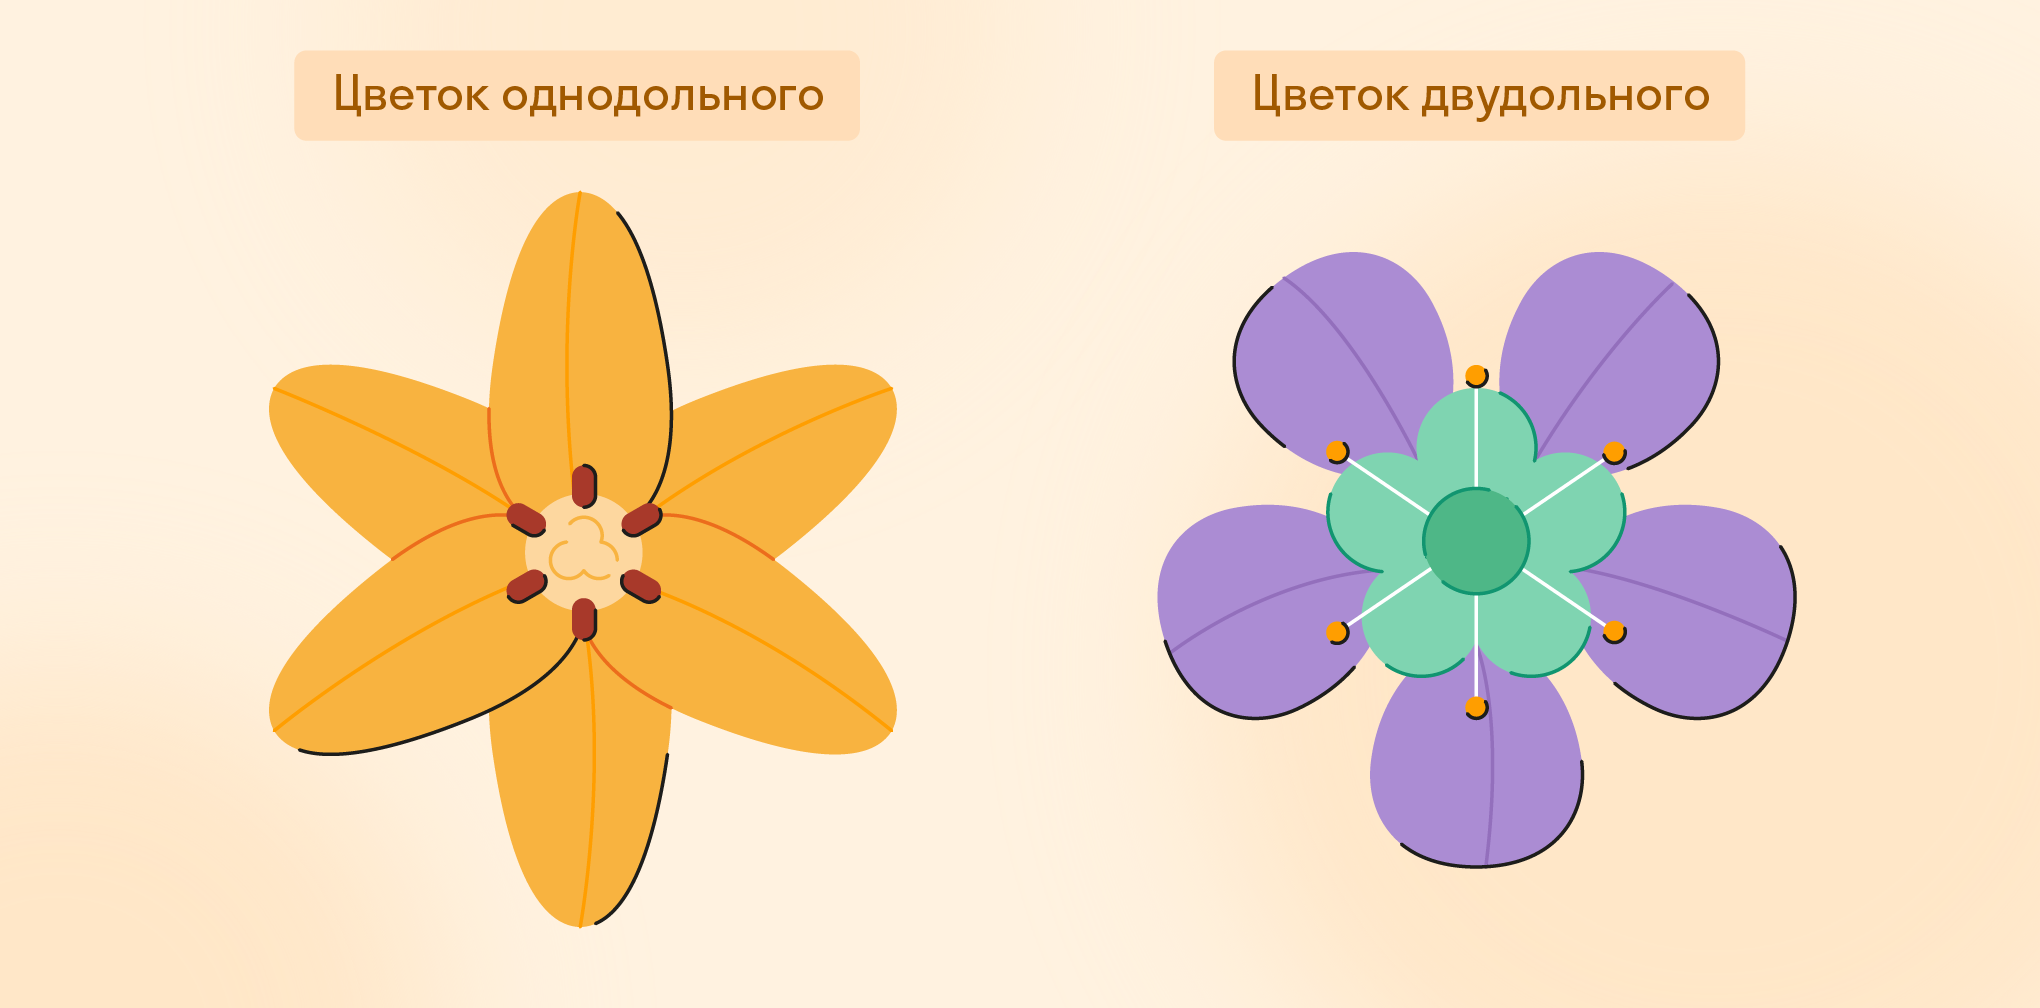 Цветок однодольного и двудольного растений